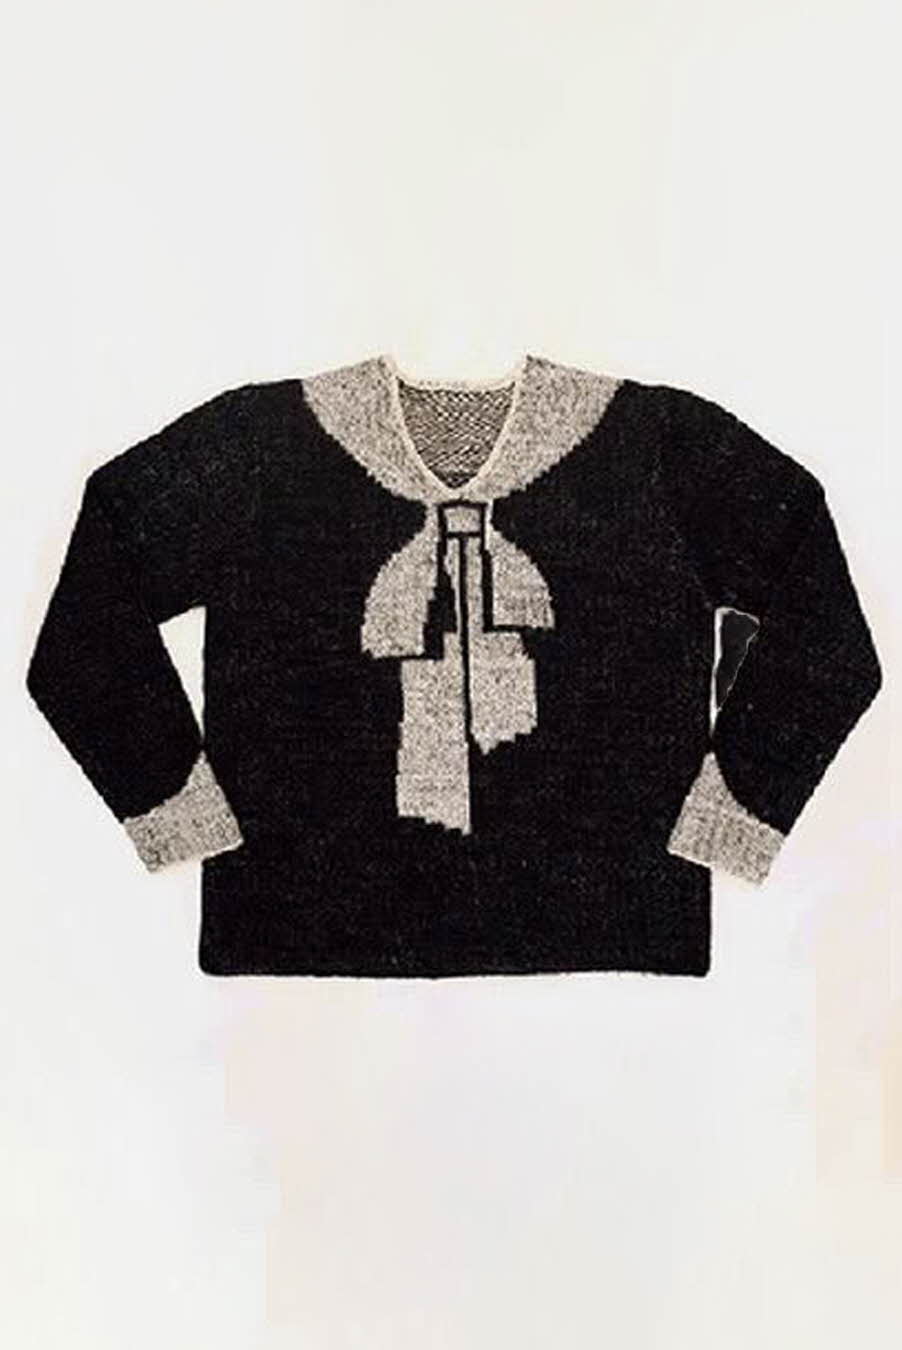 Elsa Schiaparelli, hand-knitted woollen jumper